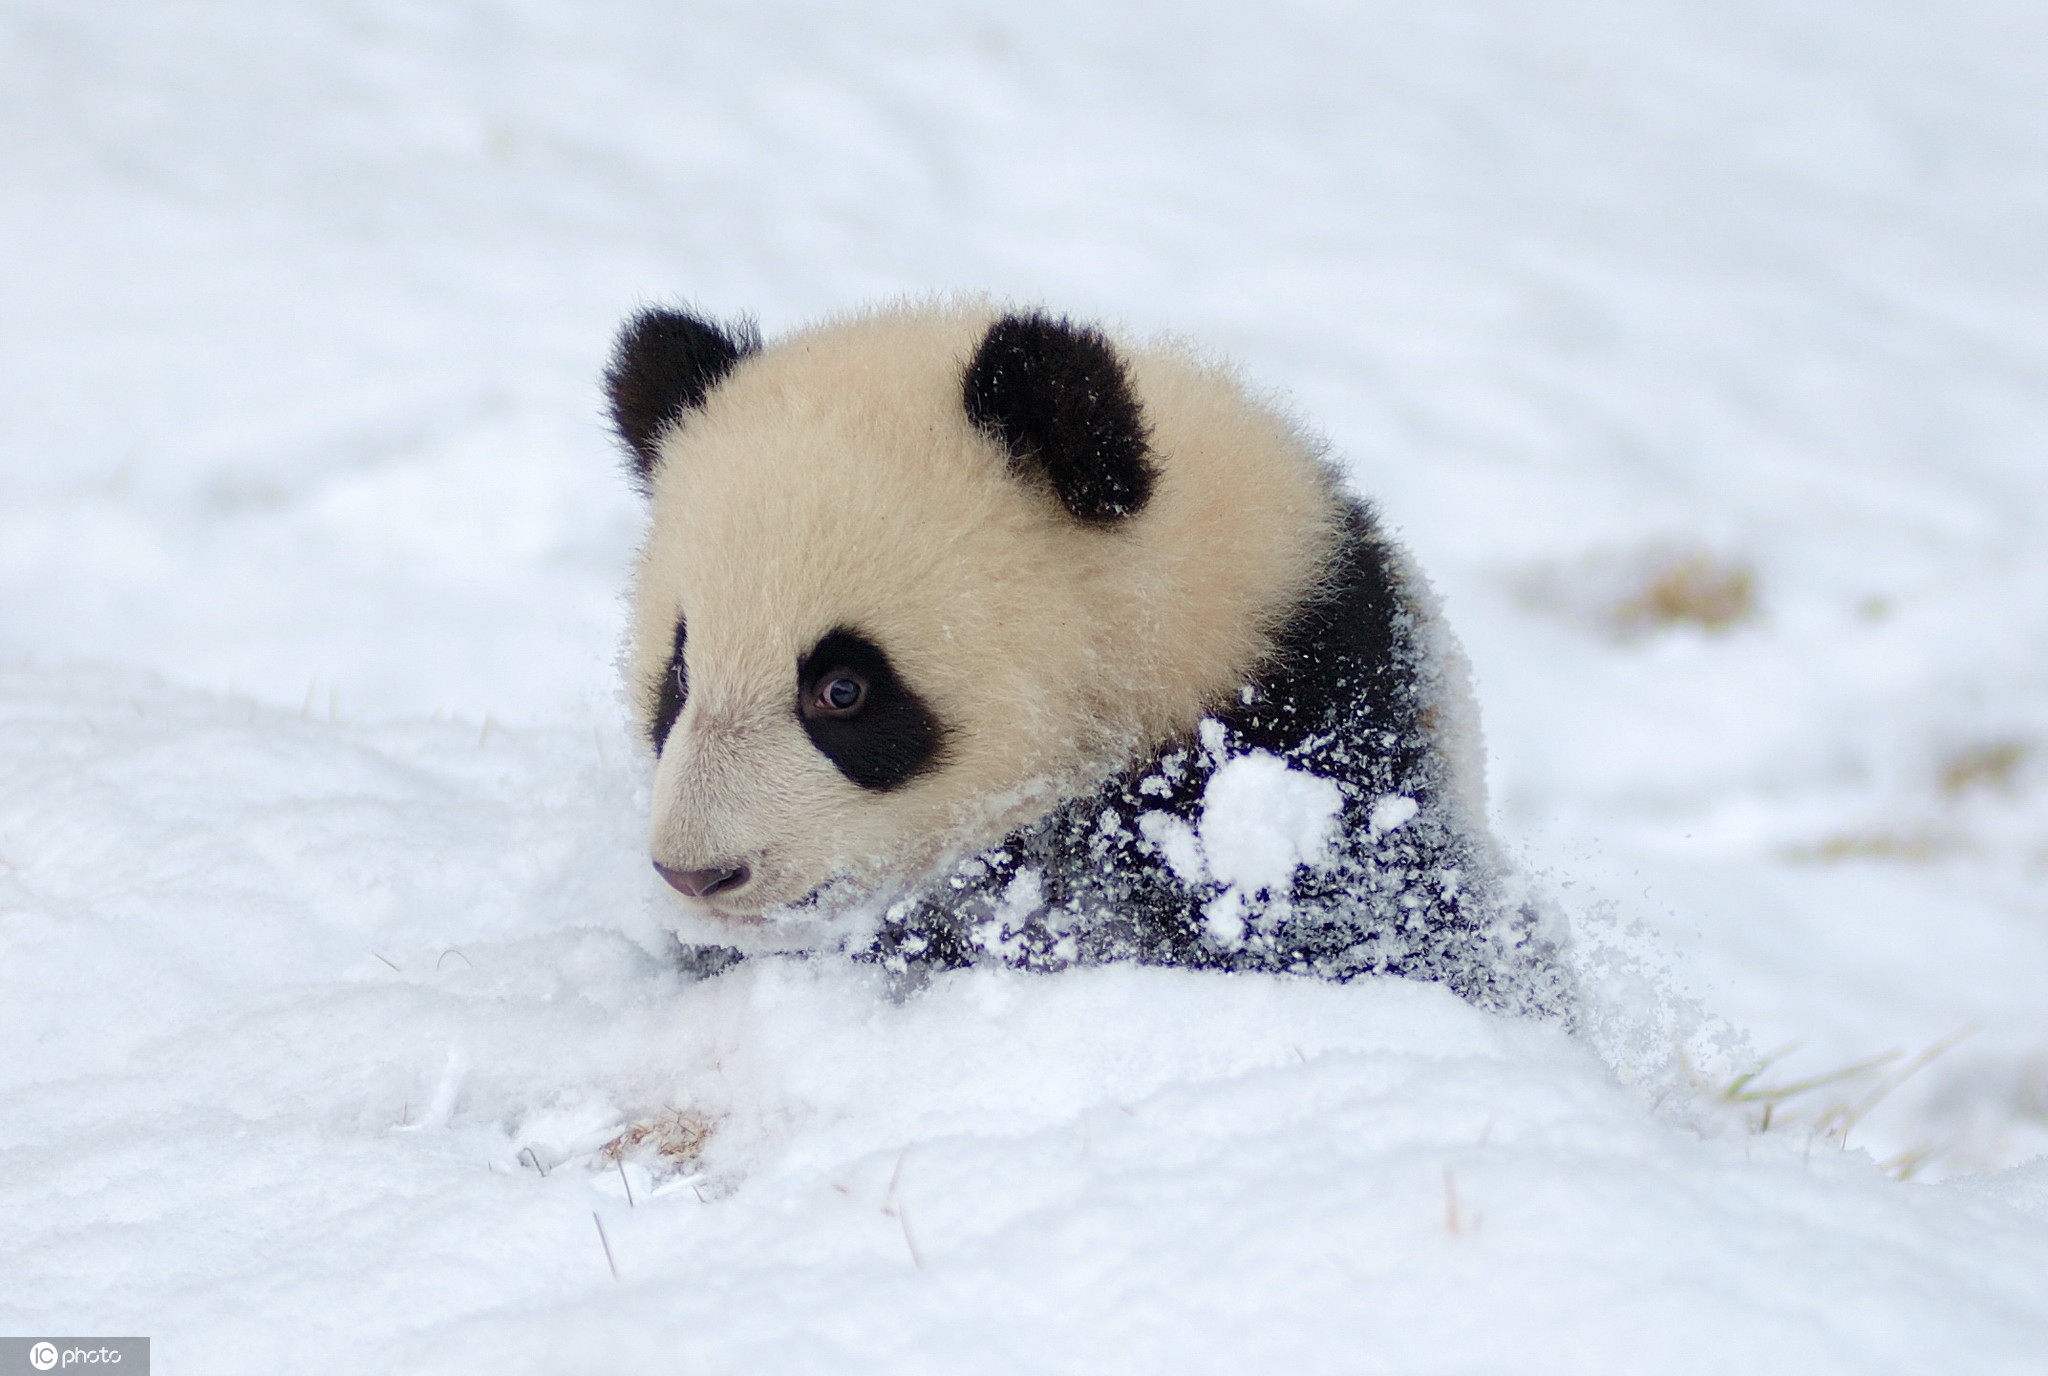 大雪节气至 晒晒敲可爱的熊猫雪地撒欢照